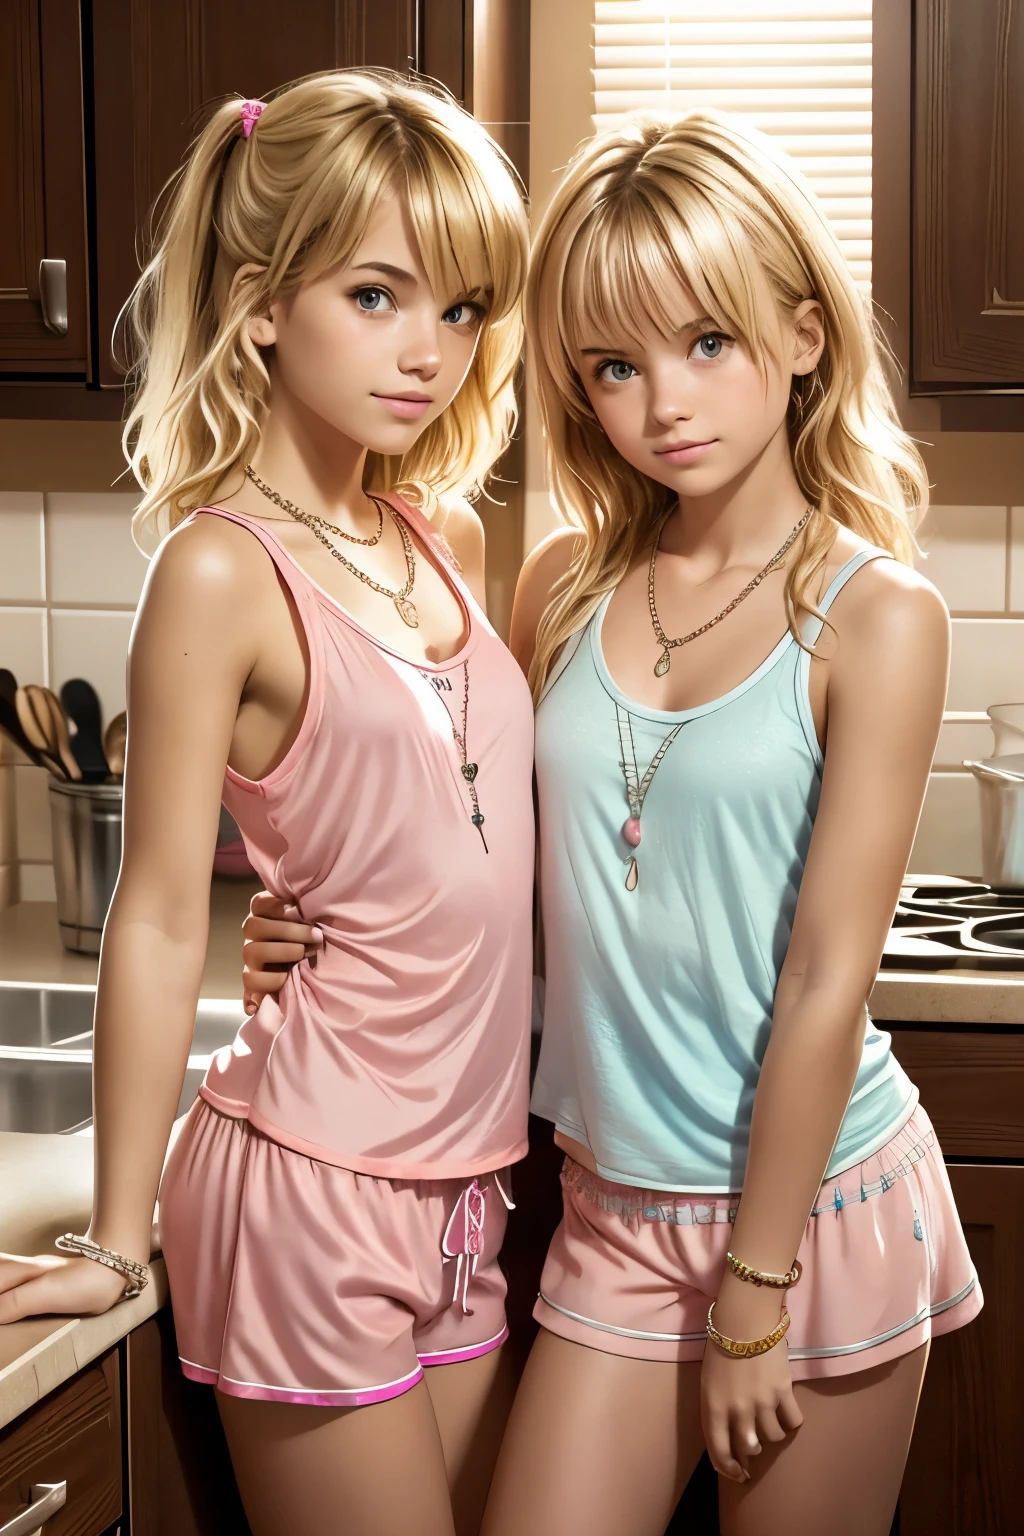 2 名少女, 穿着非常小的粉色睡衣短裤和睡衣背心, 靠在厨房柜台上, 凌乱的金发, 项链, 手镯,  直视观众